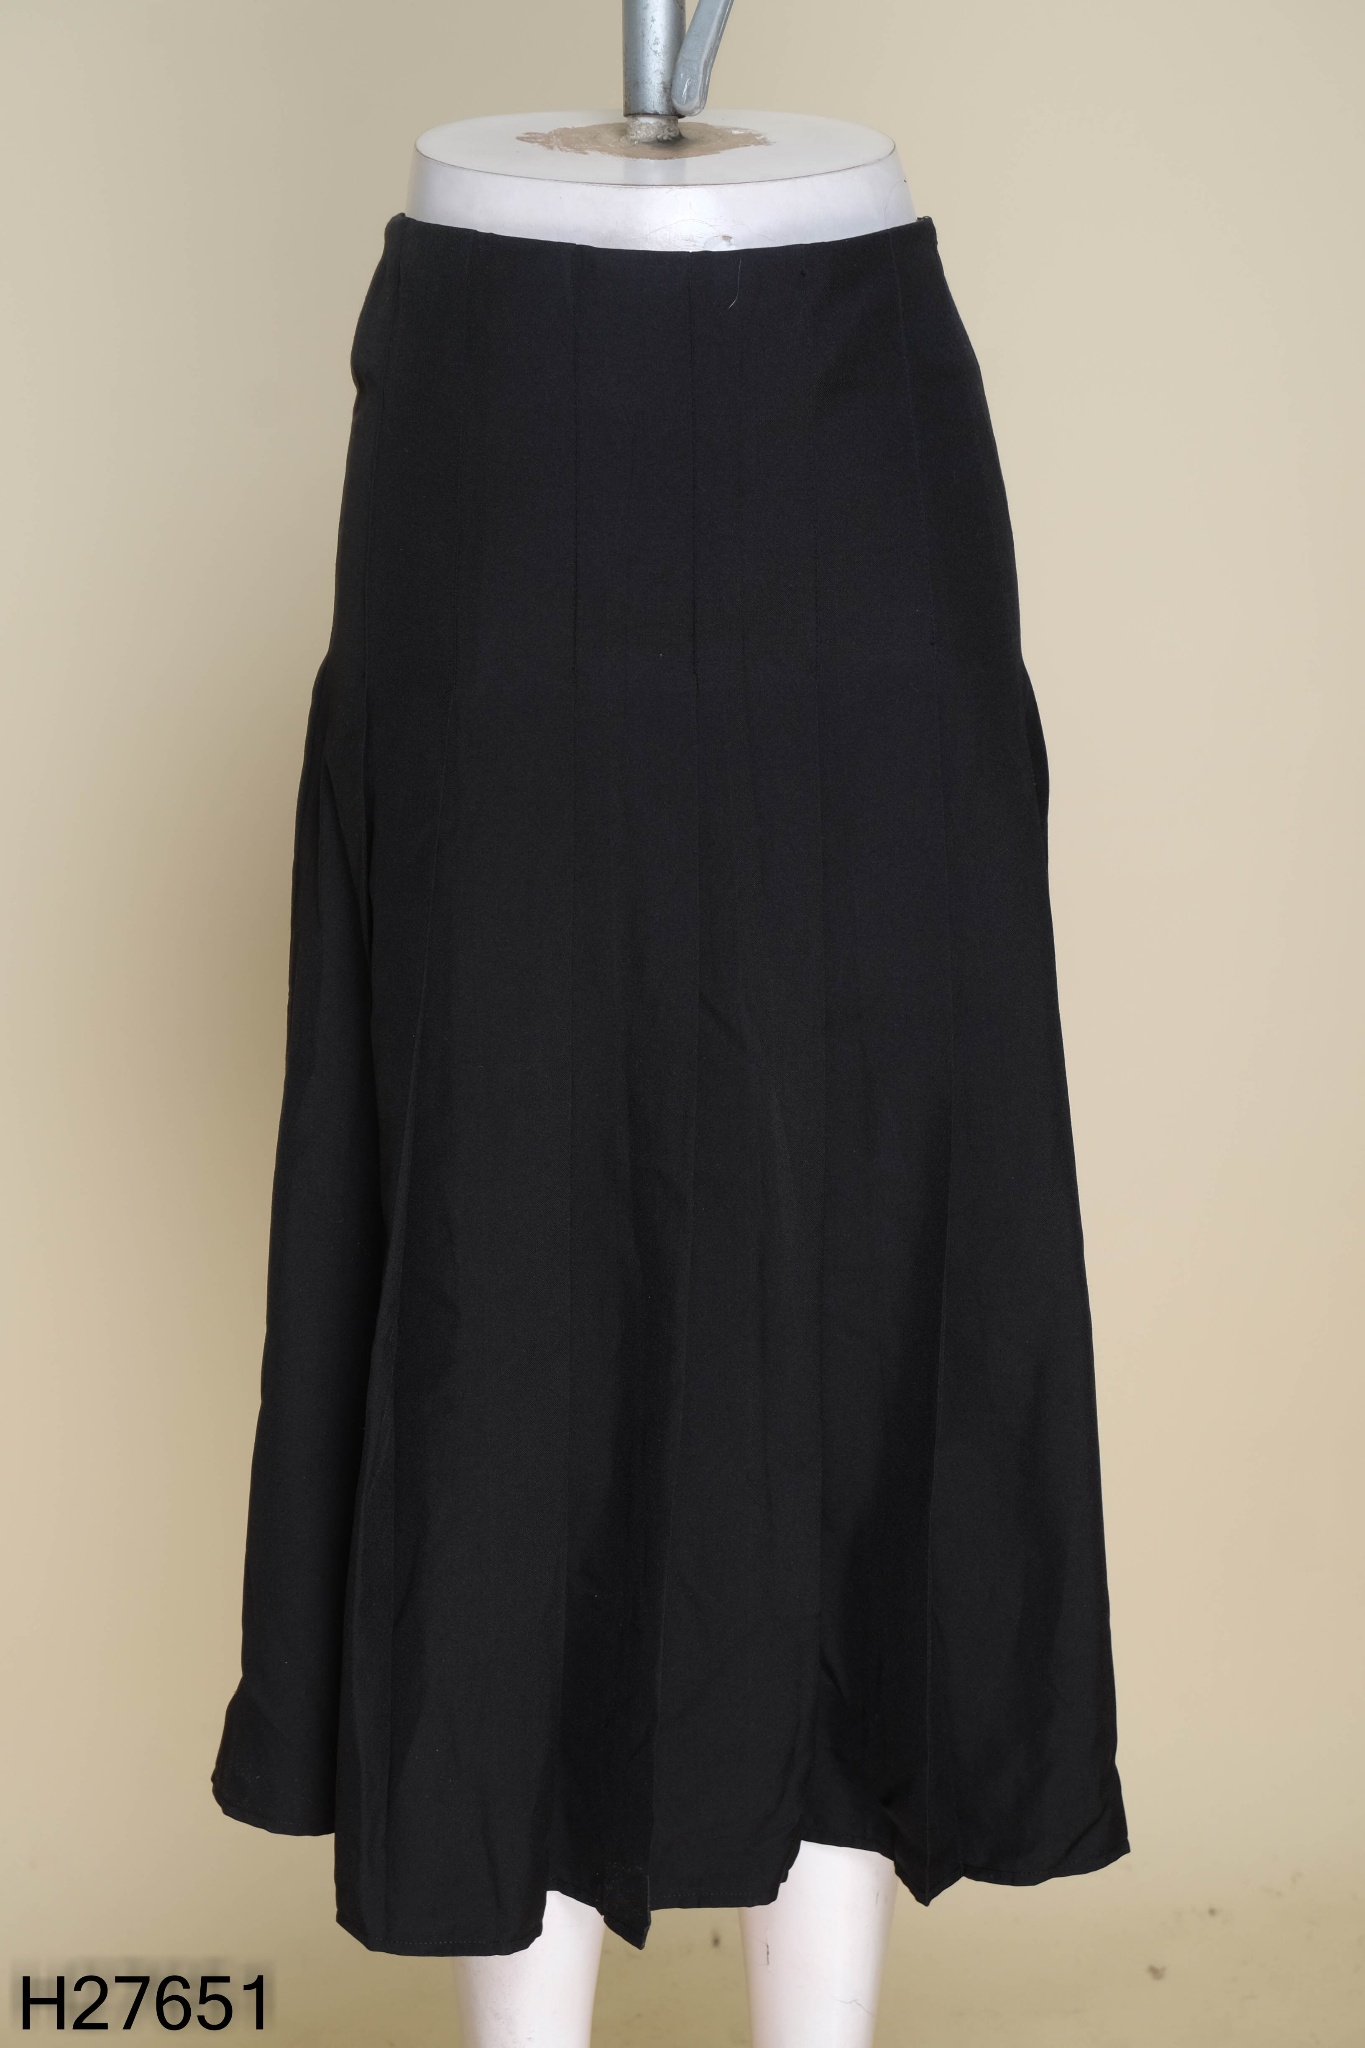 Chân váy xếp ly dáng dài hai màu đen ghi dài 90cm ms02 k kèm đai